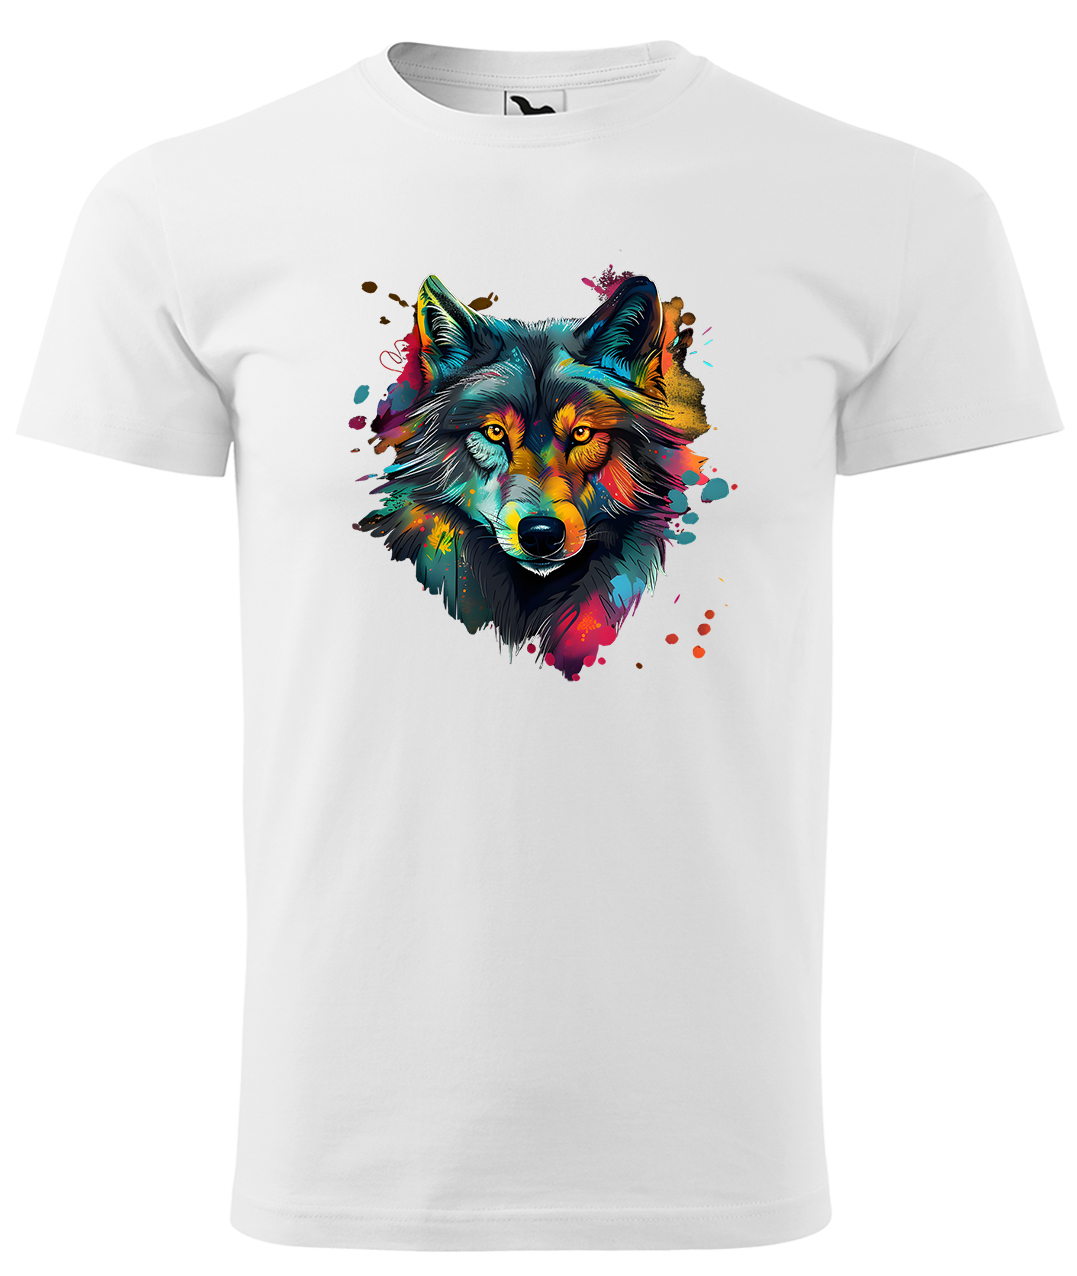 Dětské tričko s vlkem - Malovaný vlk Velikost: 4 roky / 110 cm, Barva: Bílá (00), Délka rukávu: Krátký rukáv